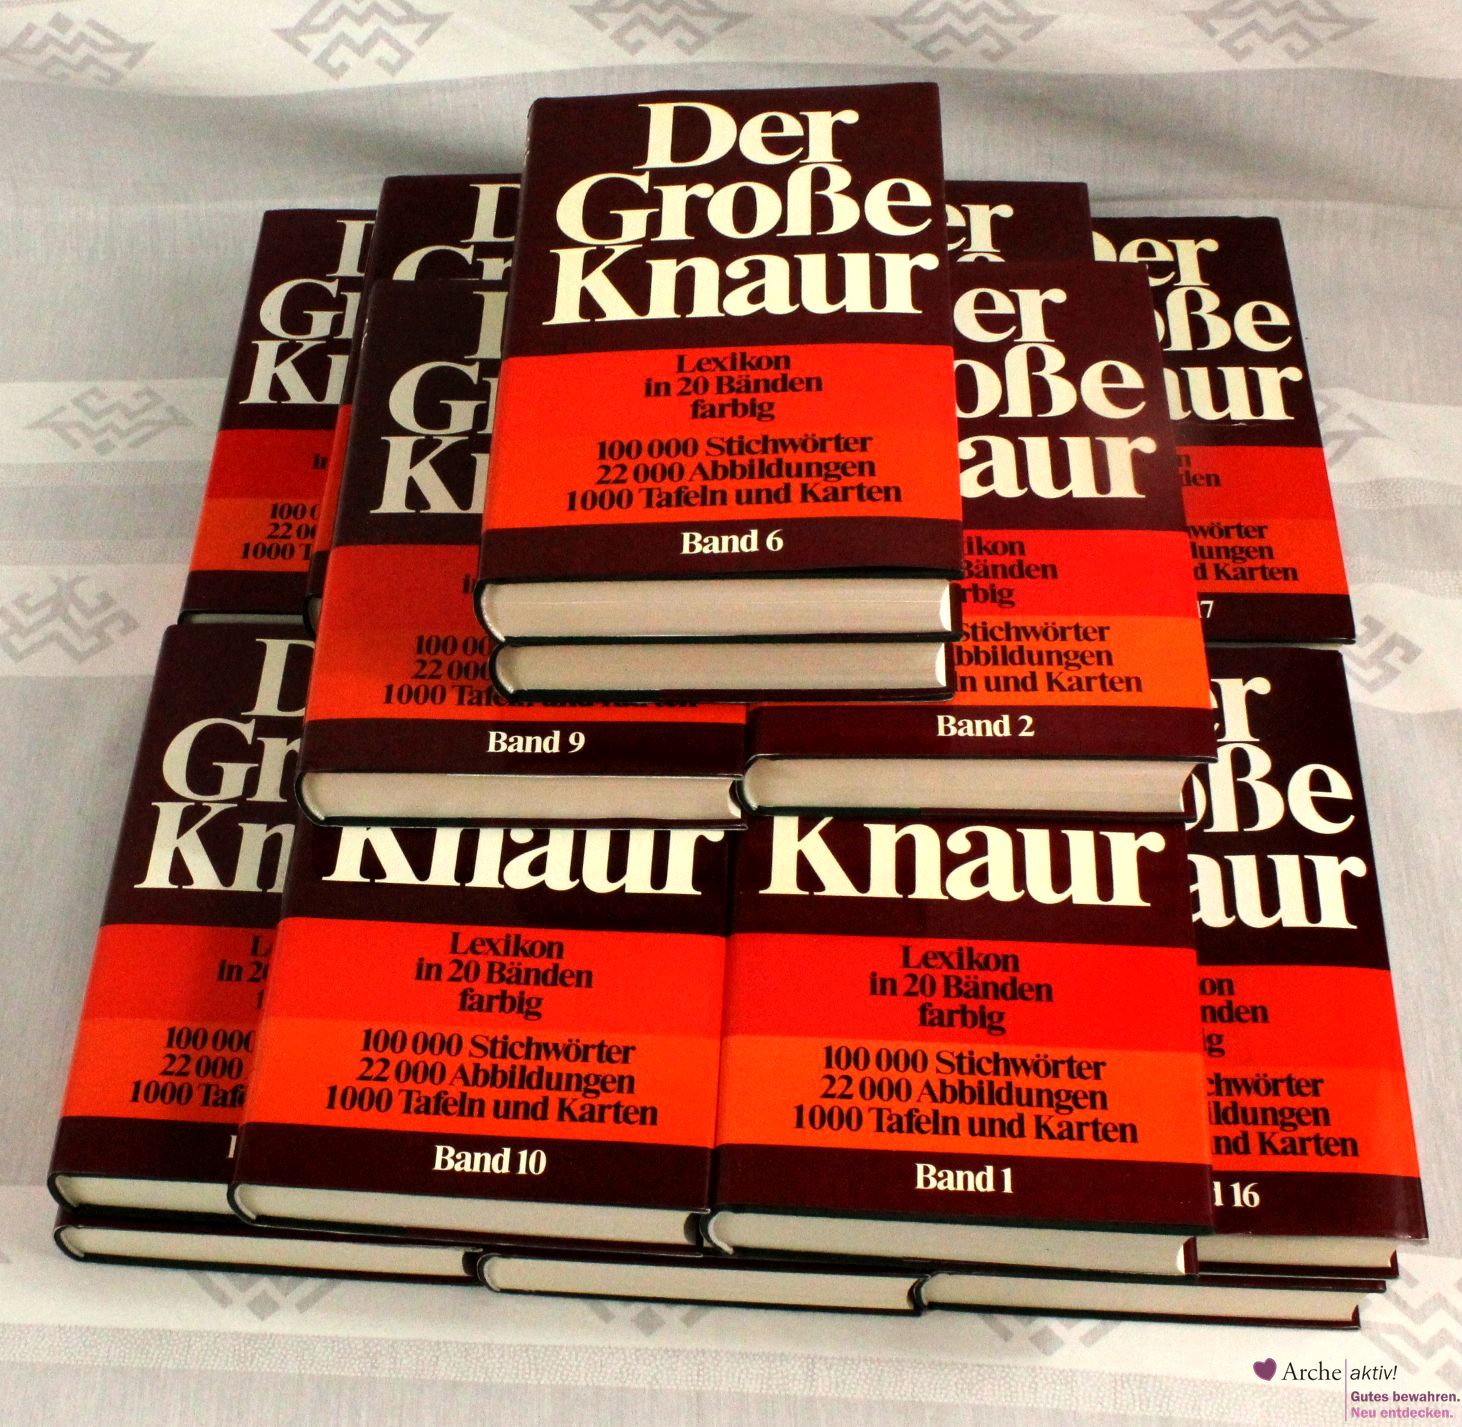 Der große Knaur - Lexikon in 20 Bänden, gebraucht